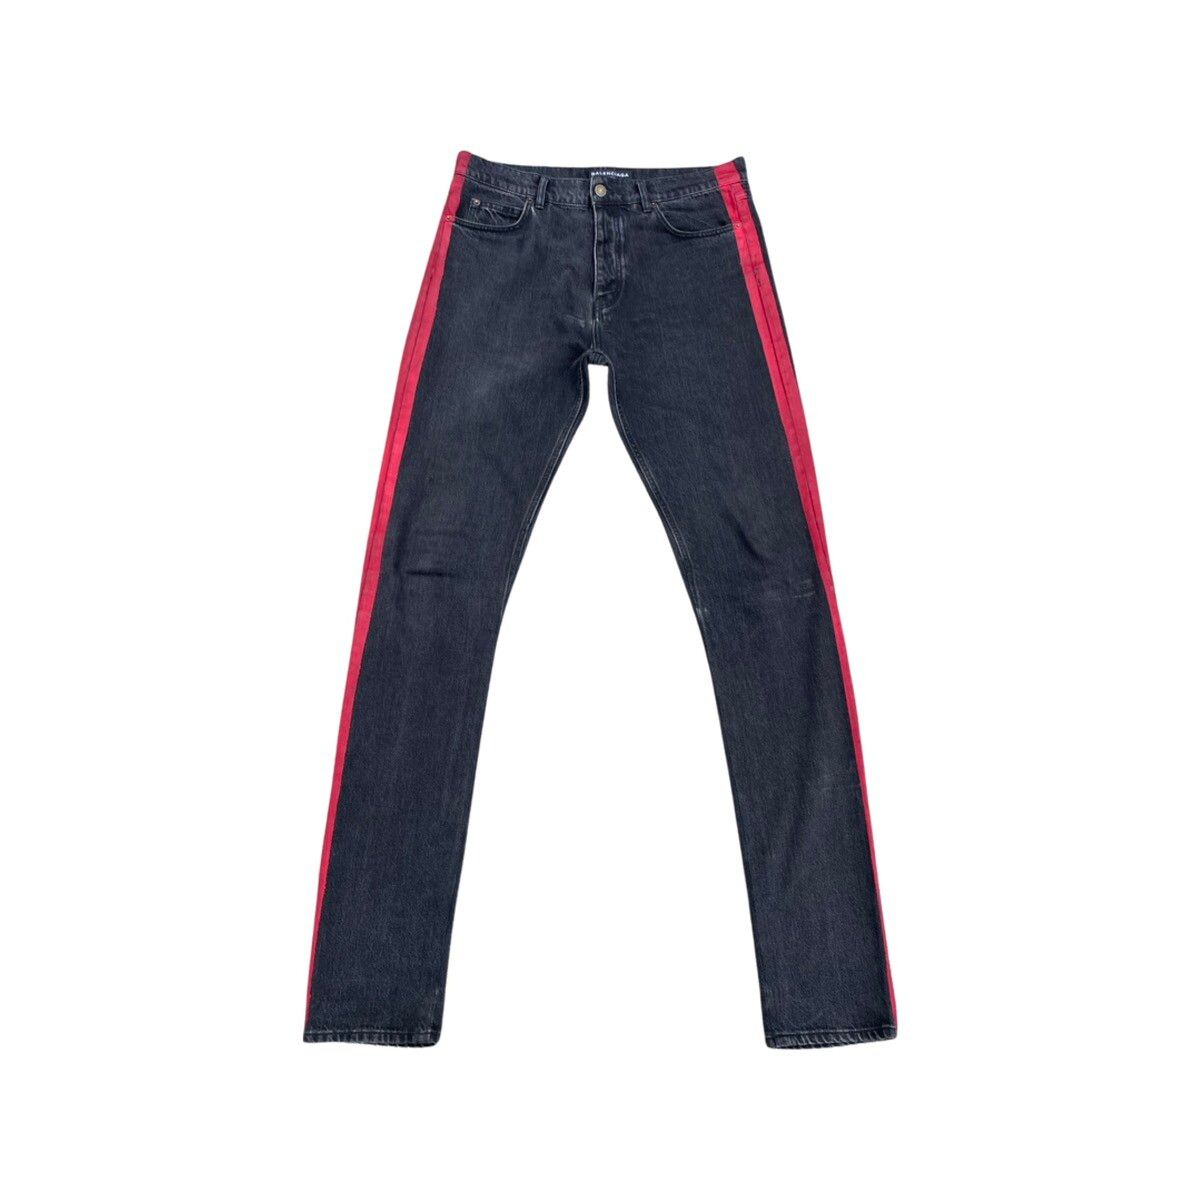 Balenciaga SS17 Red Stripe Jeans Size US 32 / EU 48 - 1 Preview